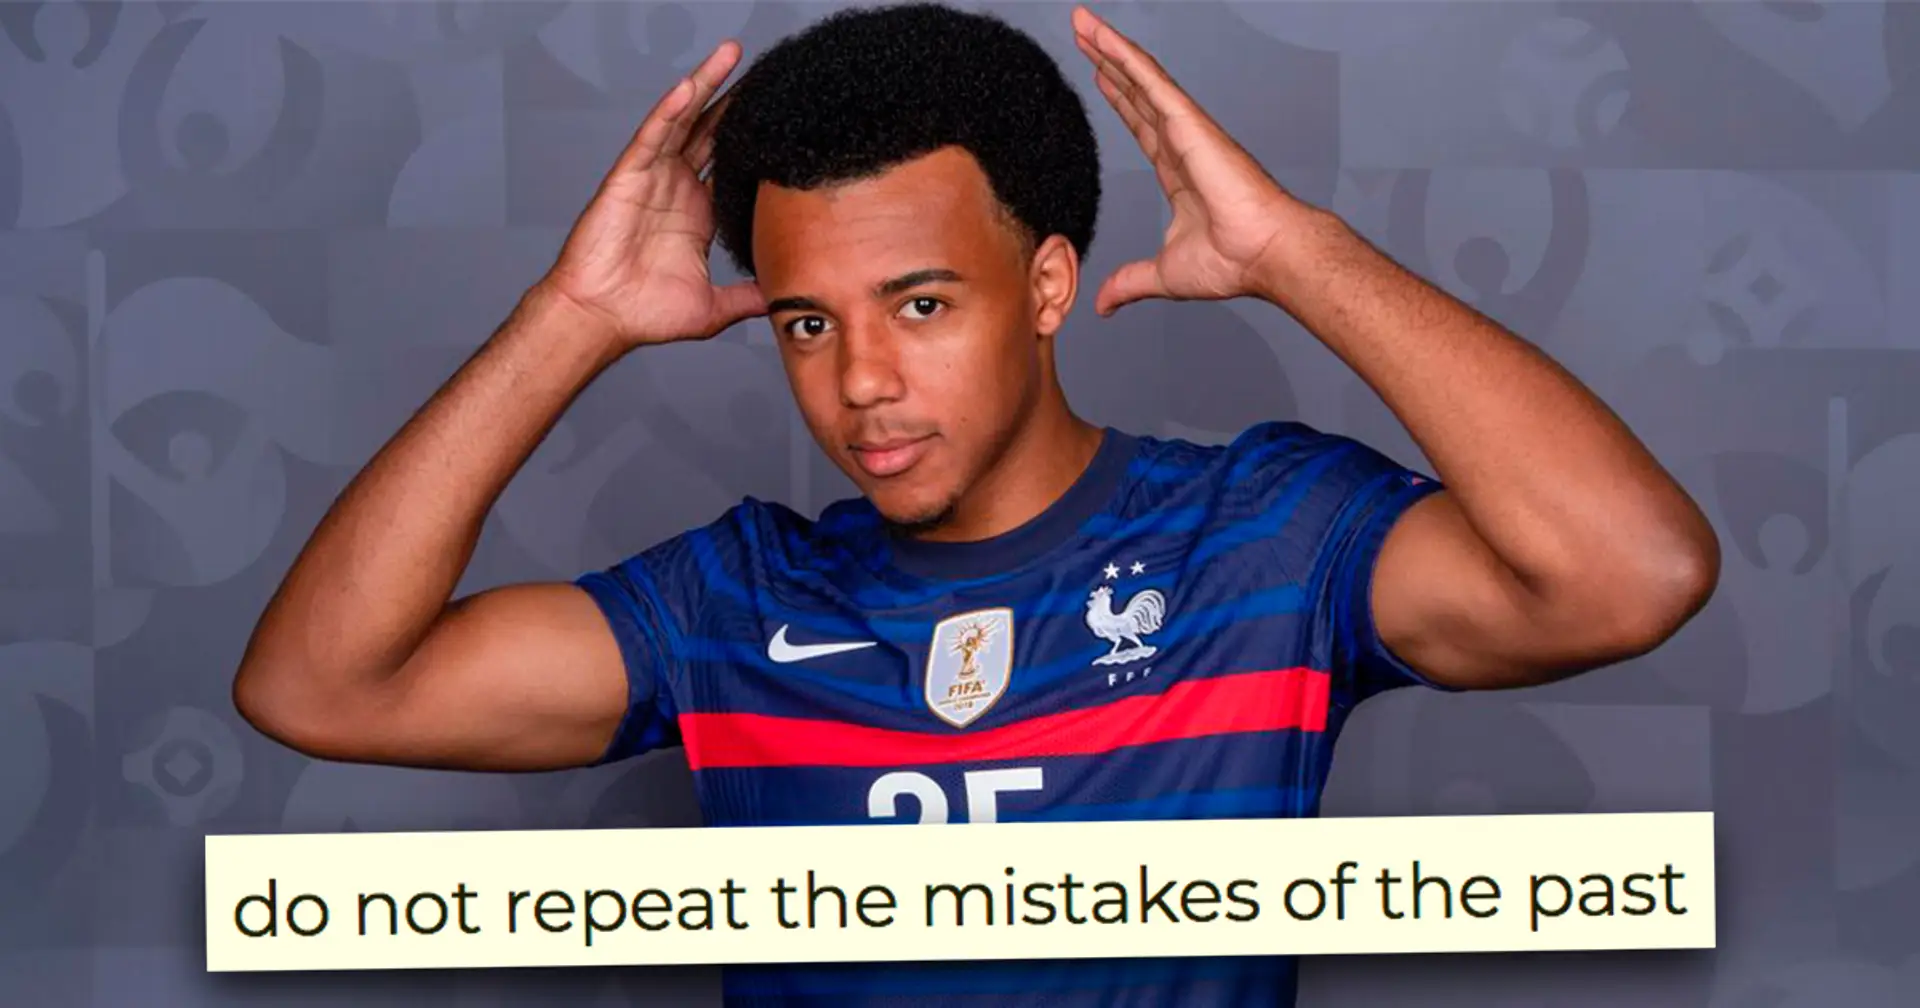 Certains fans disent que Koundé échouera car il est français - tous les défenseurs français du Barça étaient-ils mauvais? Réponse